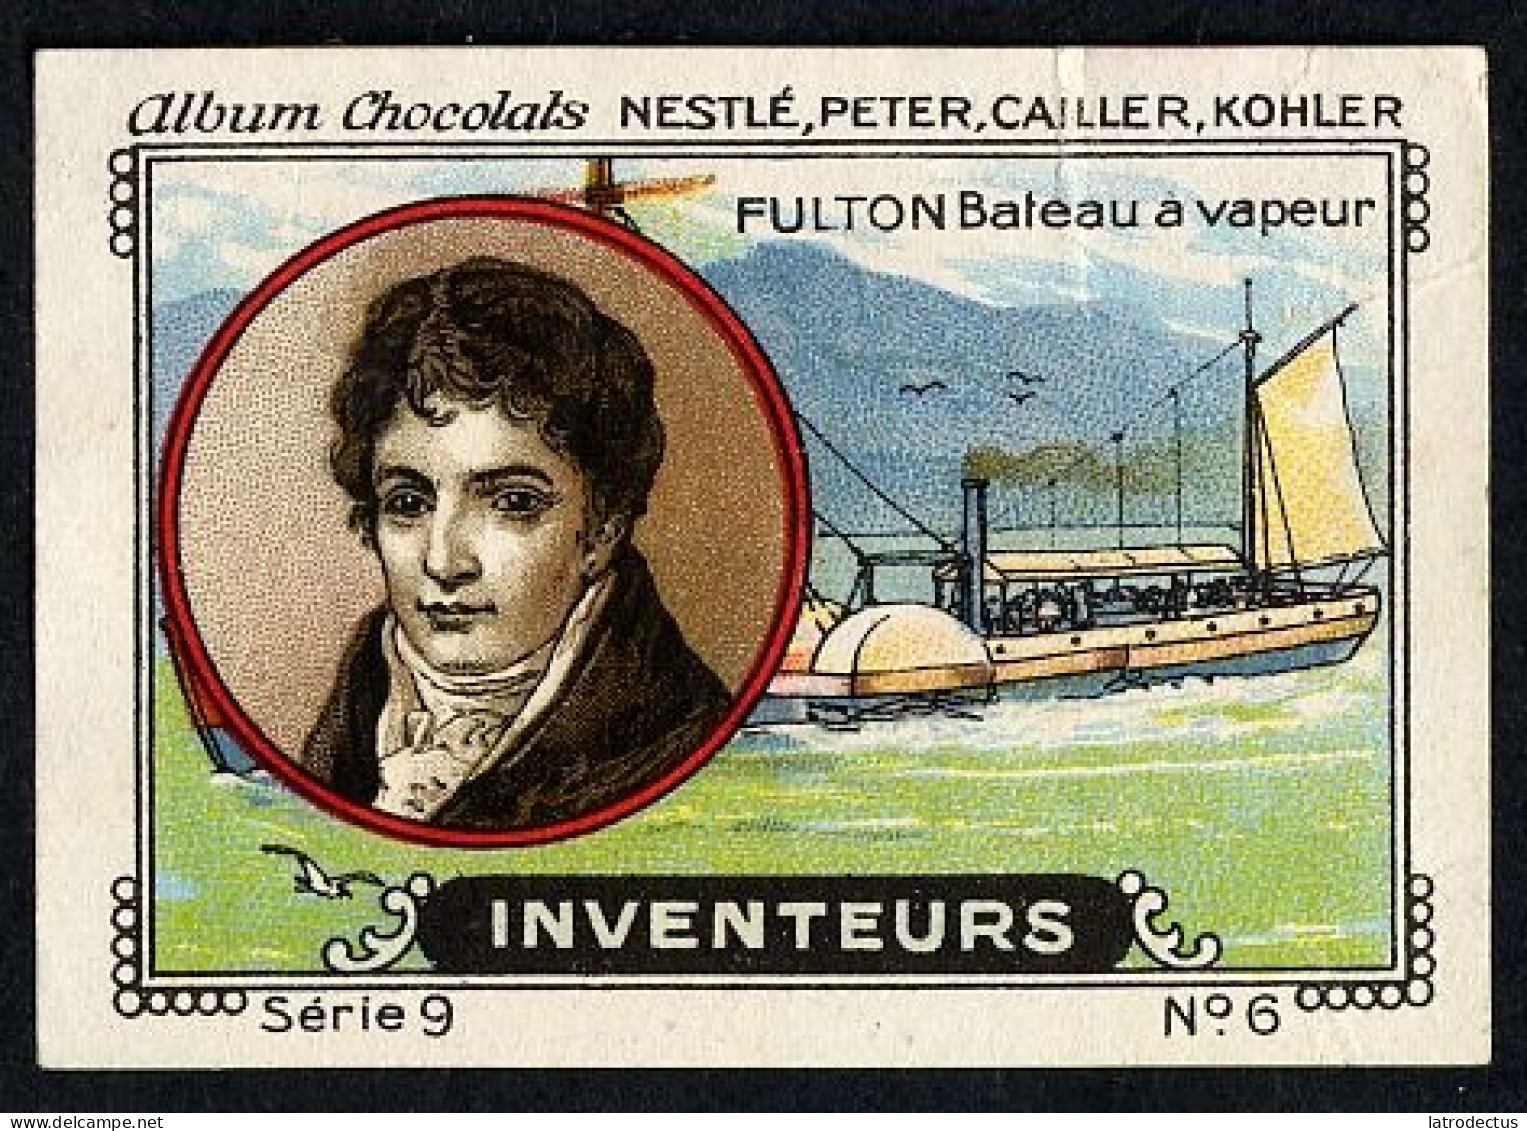 Nestlé - 9 - Inventeurs, Inventors - 6 - Fulton, Bâteau à Vapeur, Steamship - Nestlé